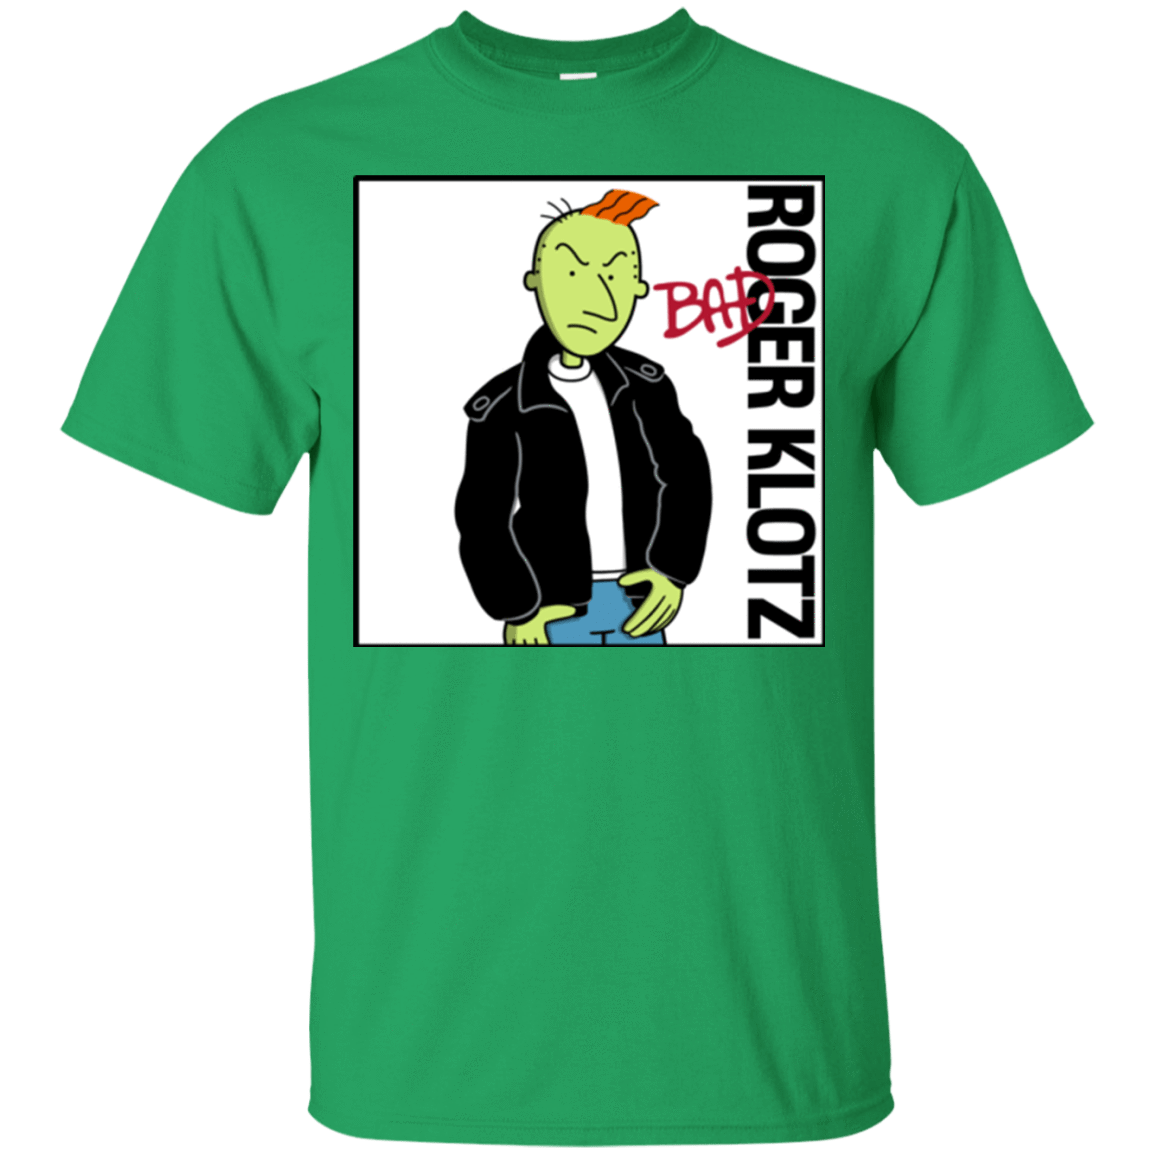 T-Shirts Irish Green / Small BAD T-Shirt